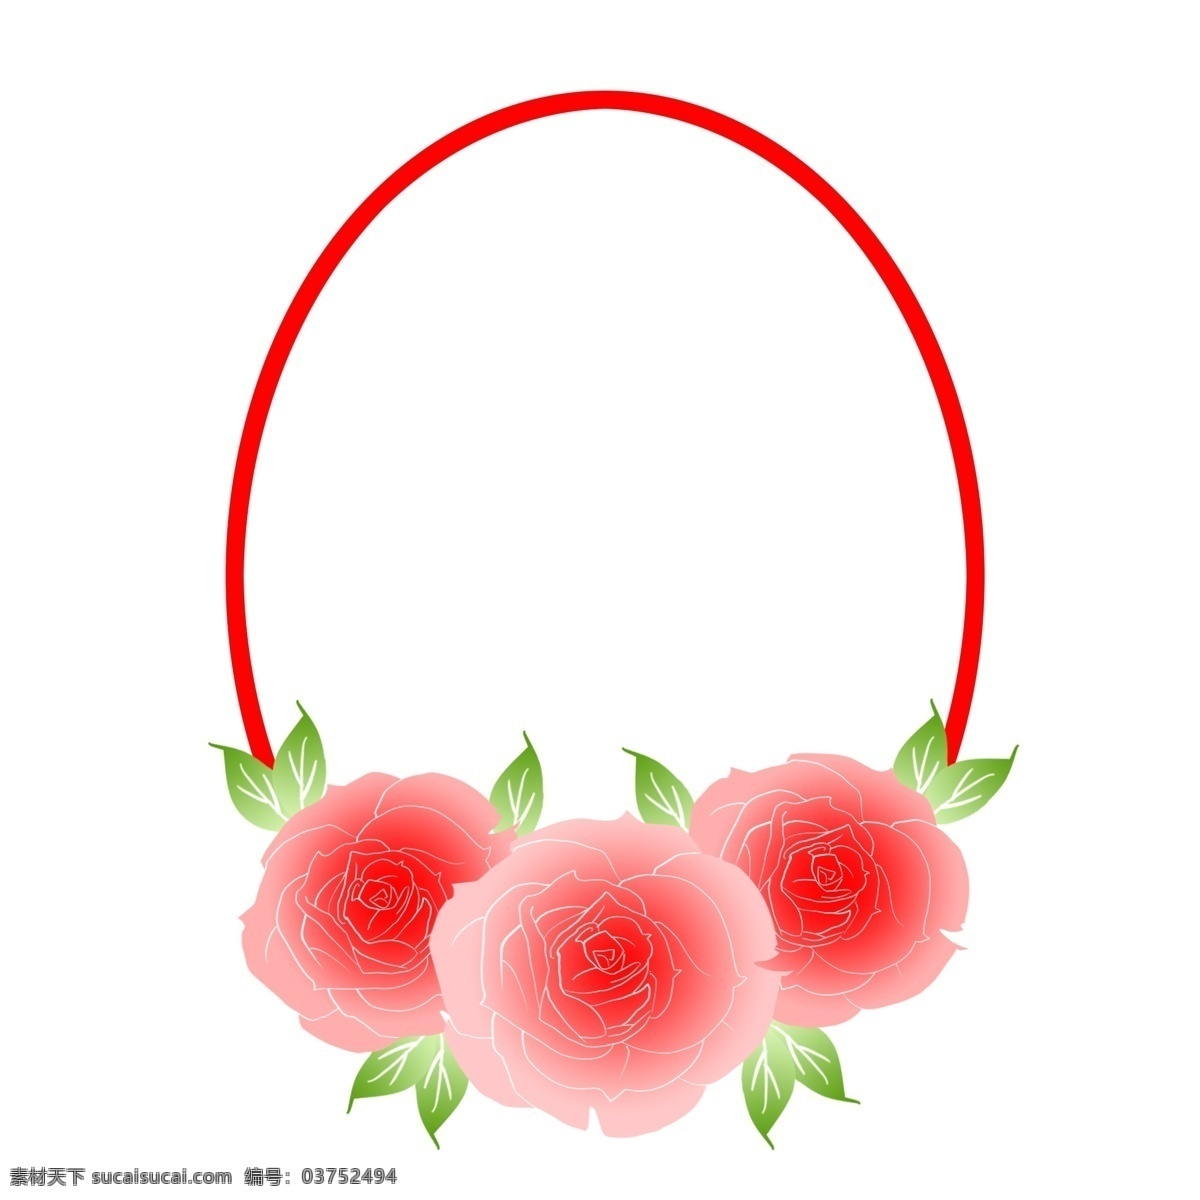 圆形 鲜花 边框 插画 可爱 漂亮 红色 圆形鲜花边框 手绘鲜花边框 绿色的叶子